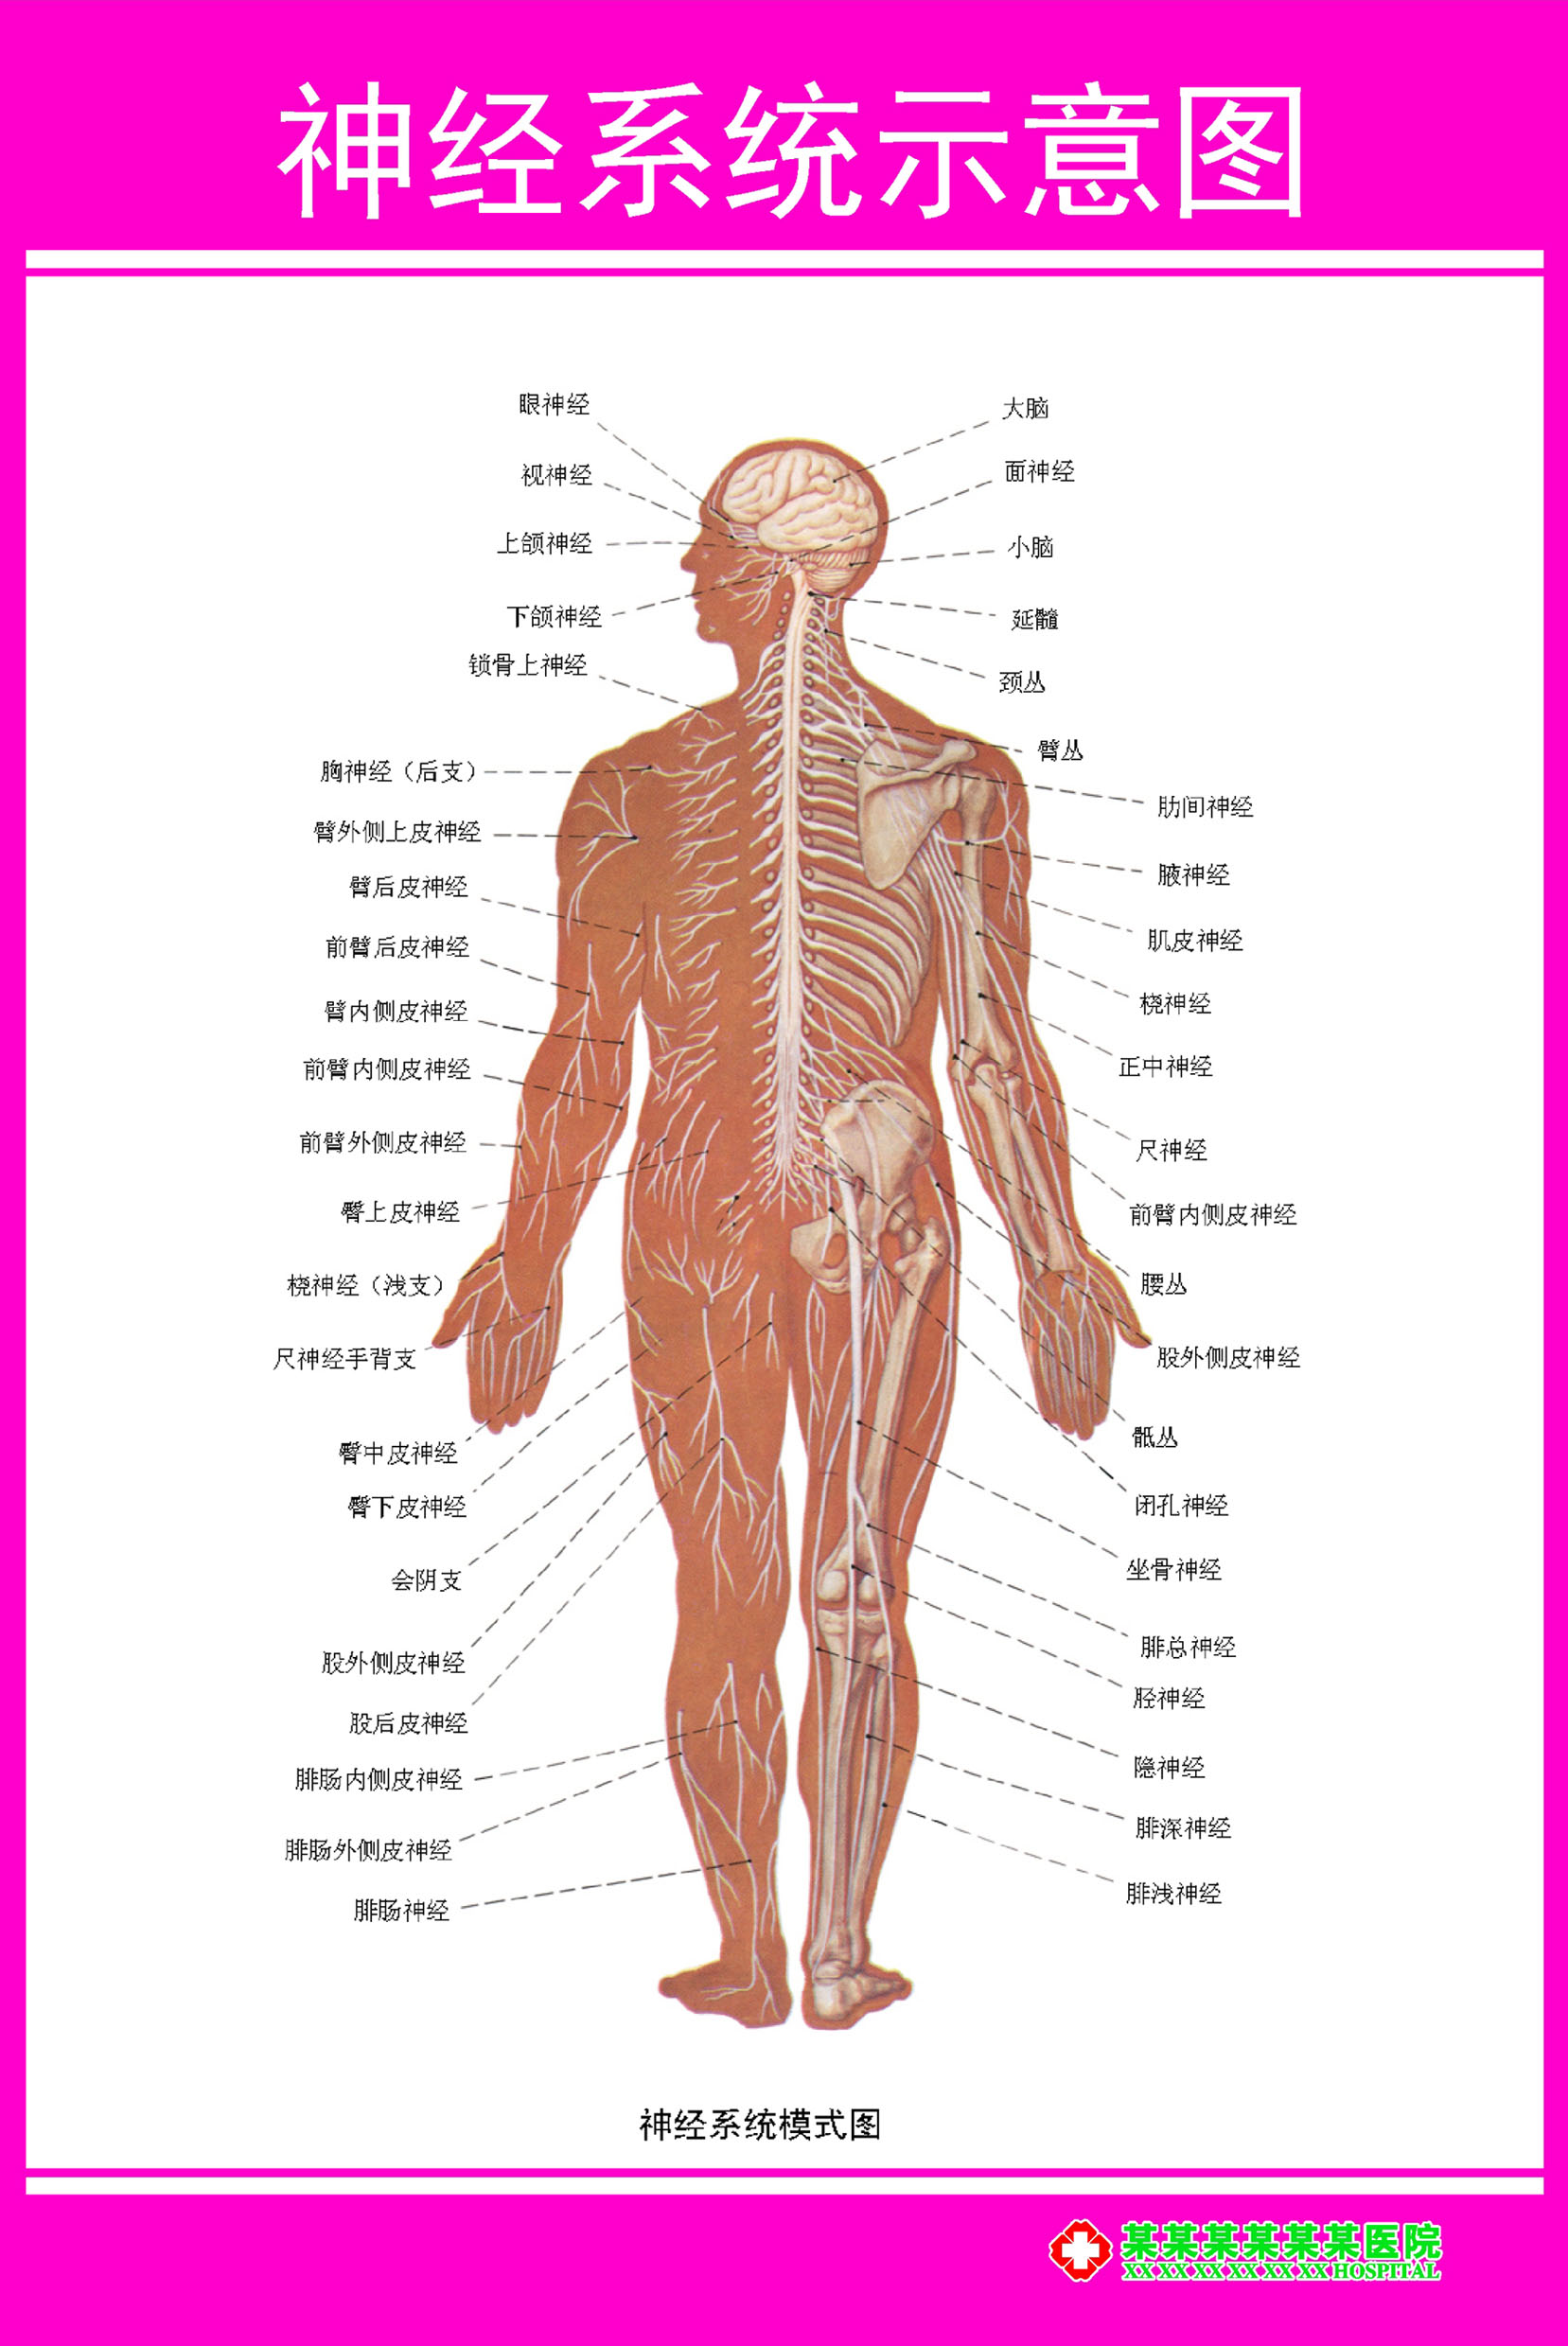 429居家海报展板喷绘贴纸图片46骨科解剖图神经系统图